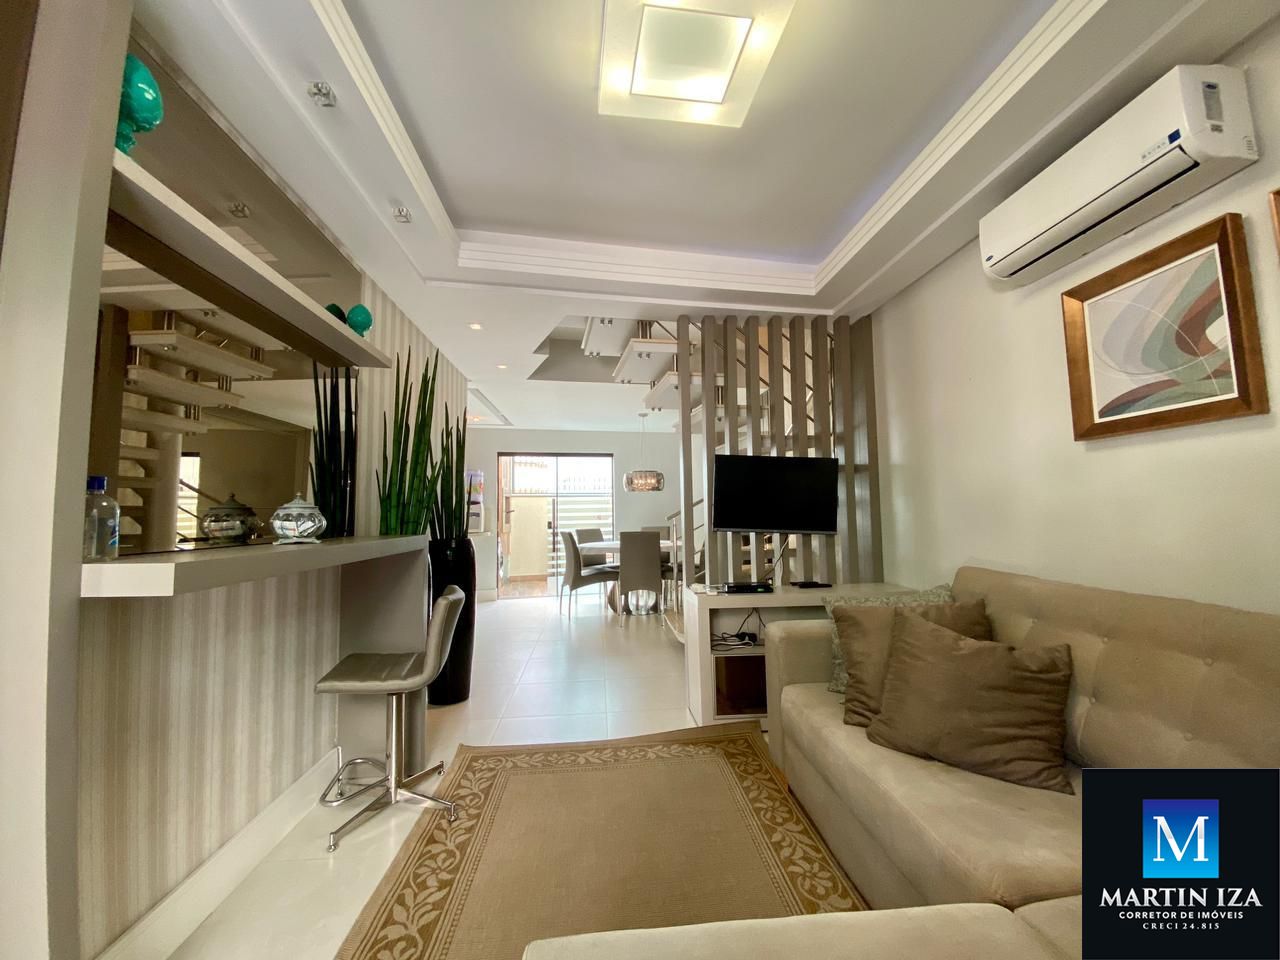 Apartamento com 3 Dormitórios para alugar, 95 m² por R$ 600,00